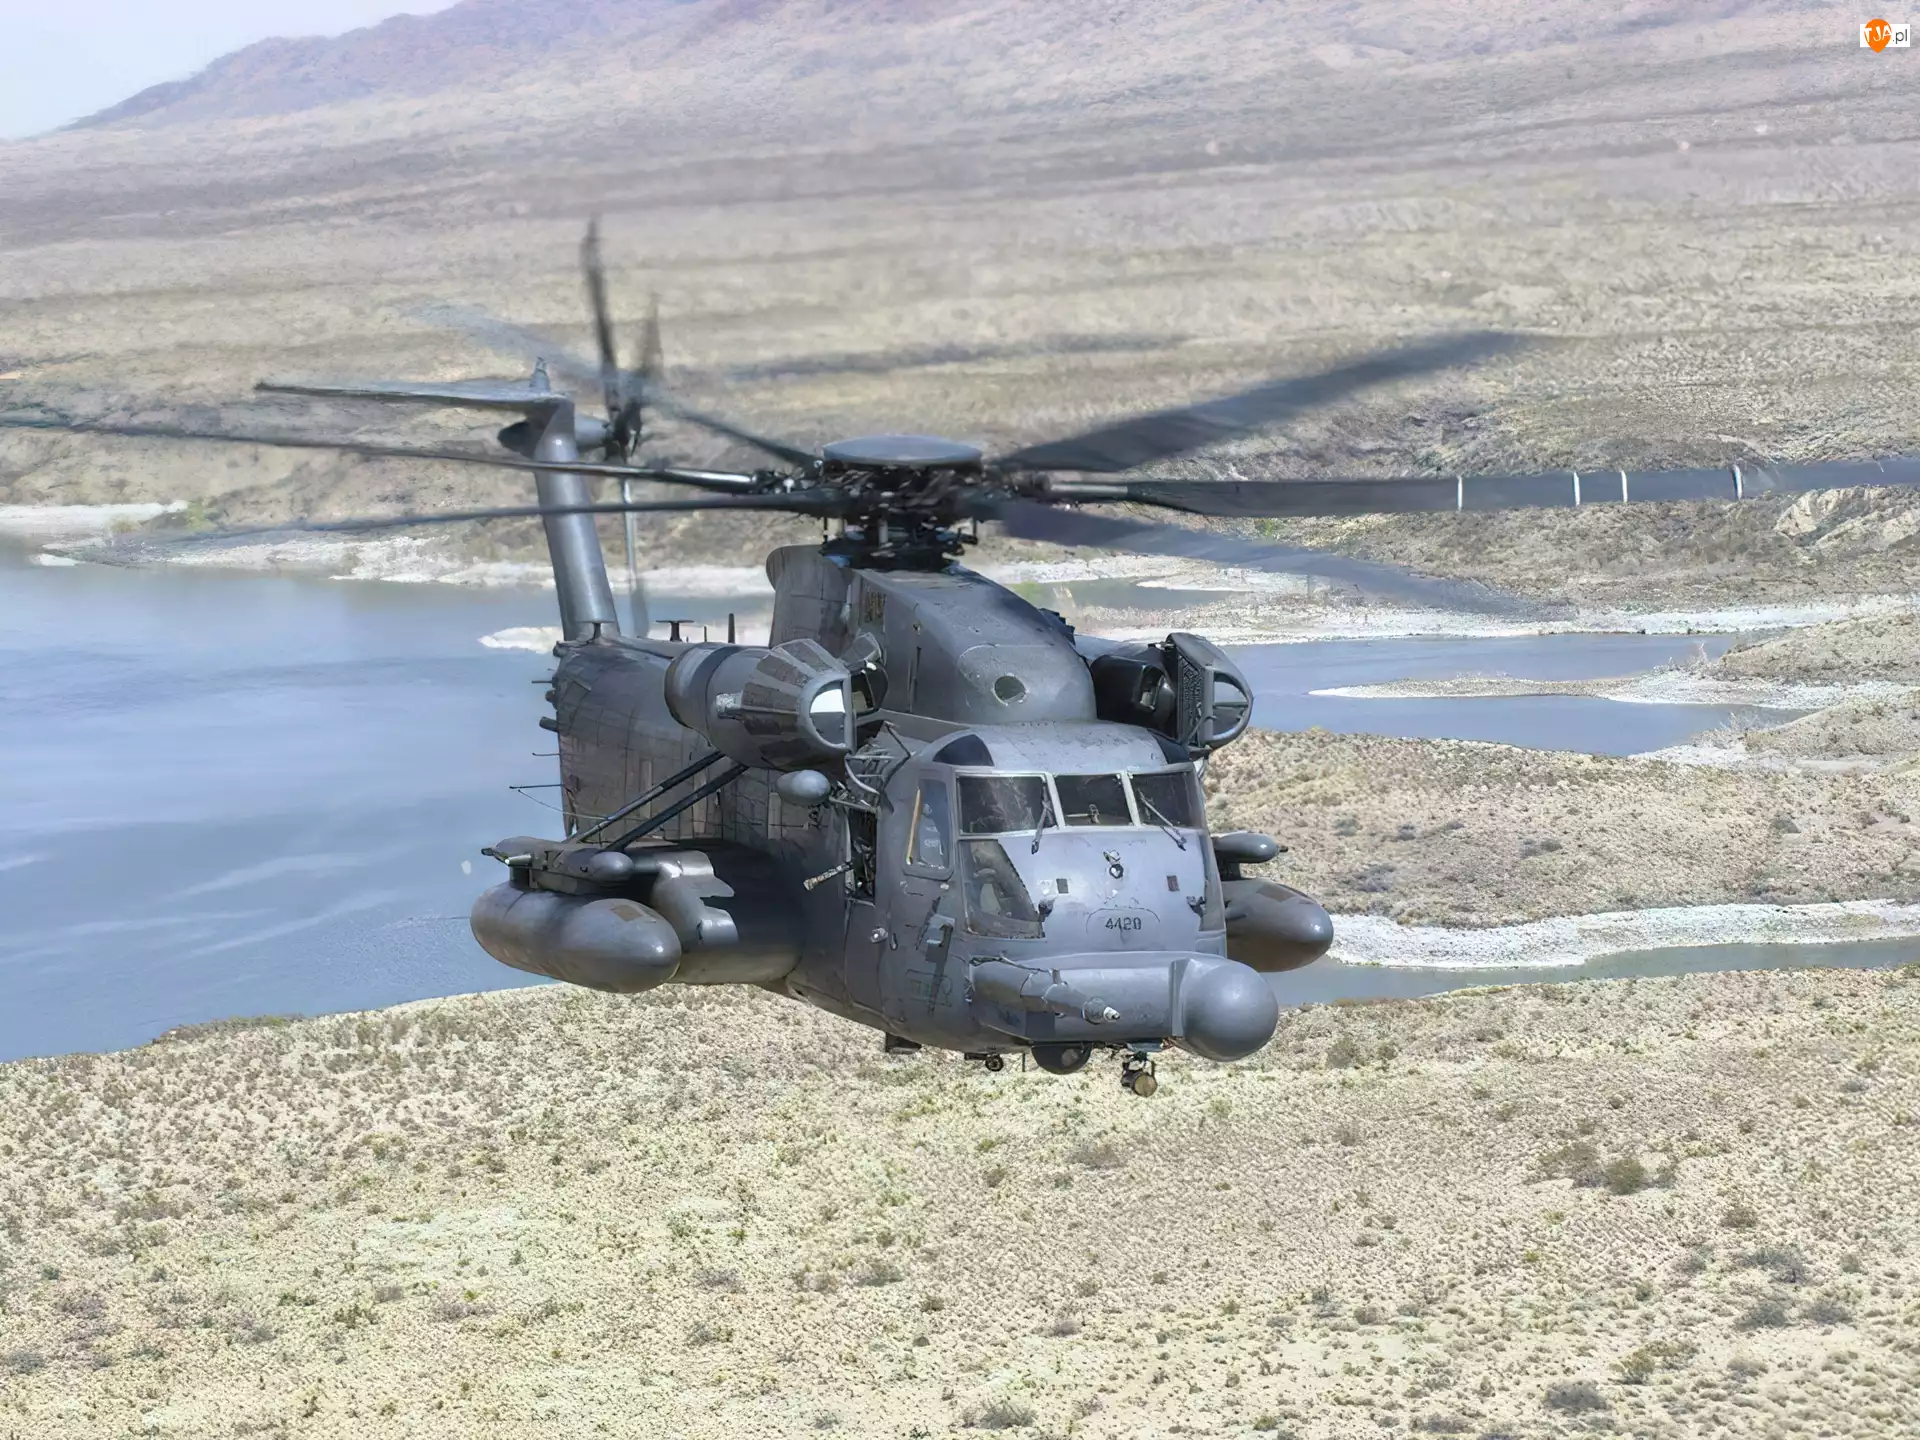 Pustynia, CH-53E Super Stallion